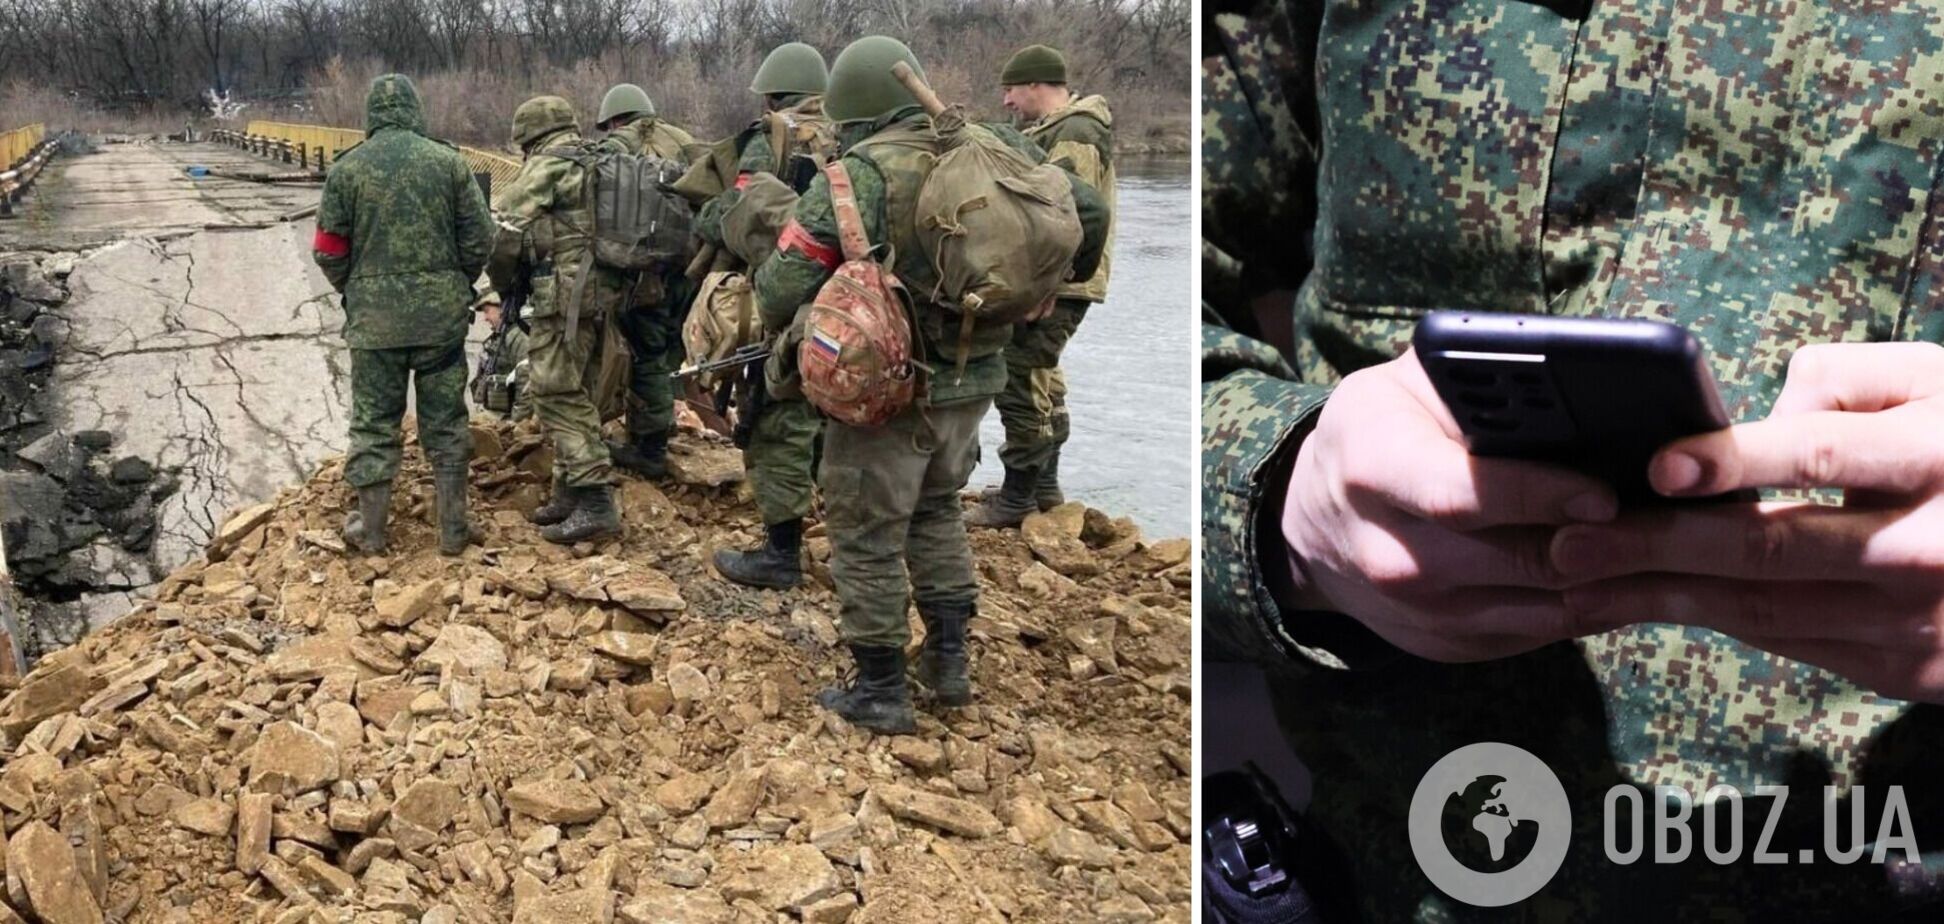 '18-летних призывников поселили вместе с зэками': родственники мобилизованных жалуются на порядки в армии РФ. Перехват